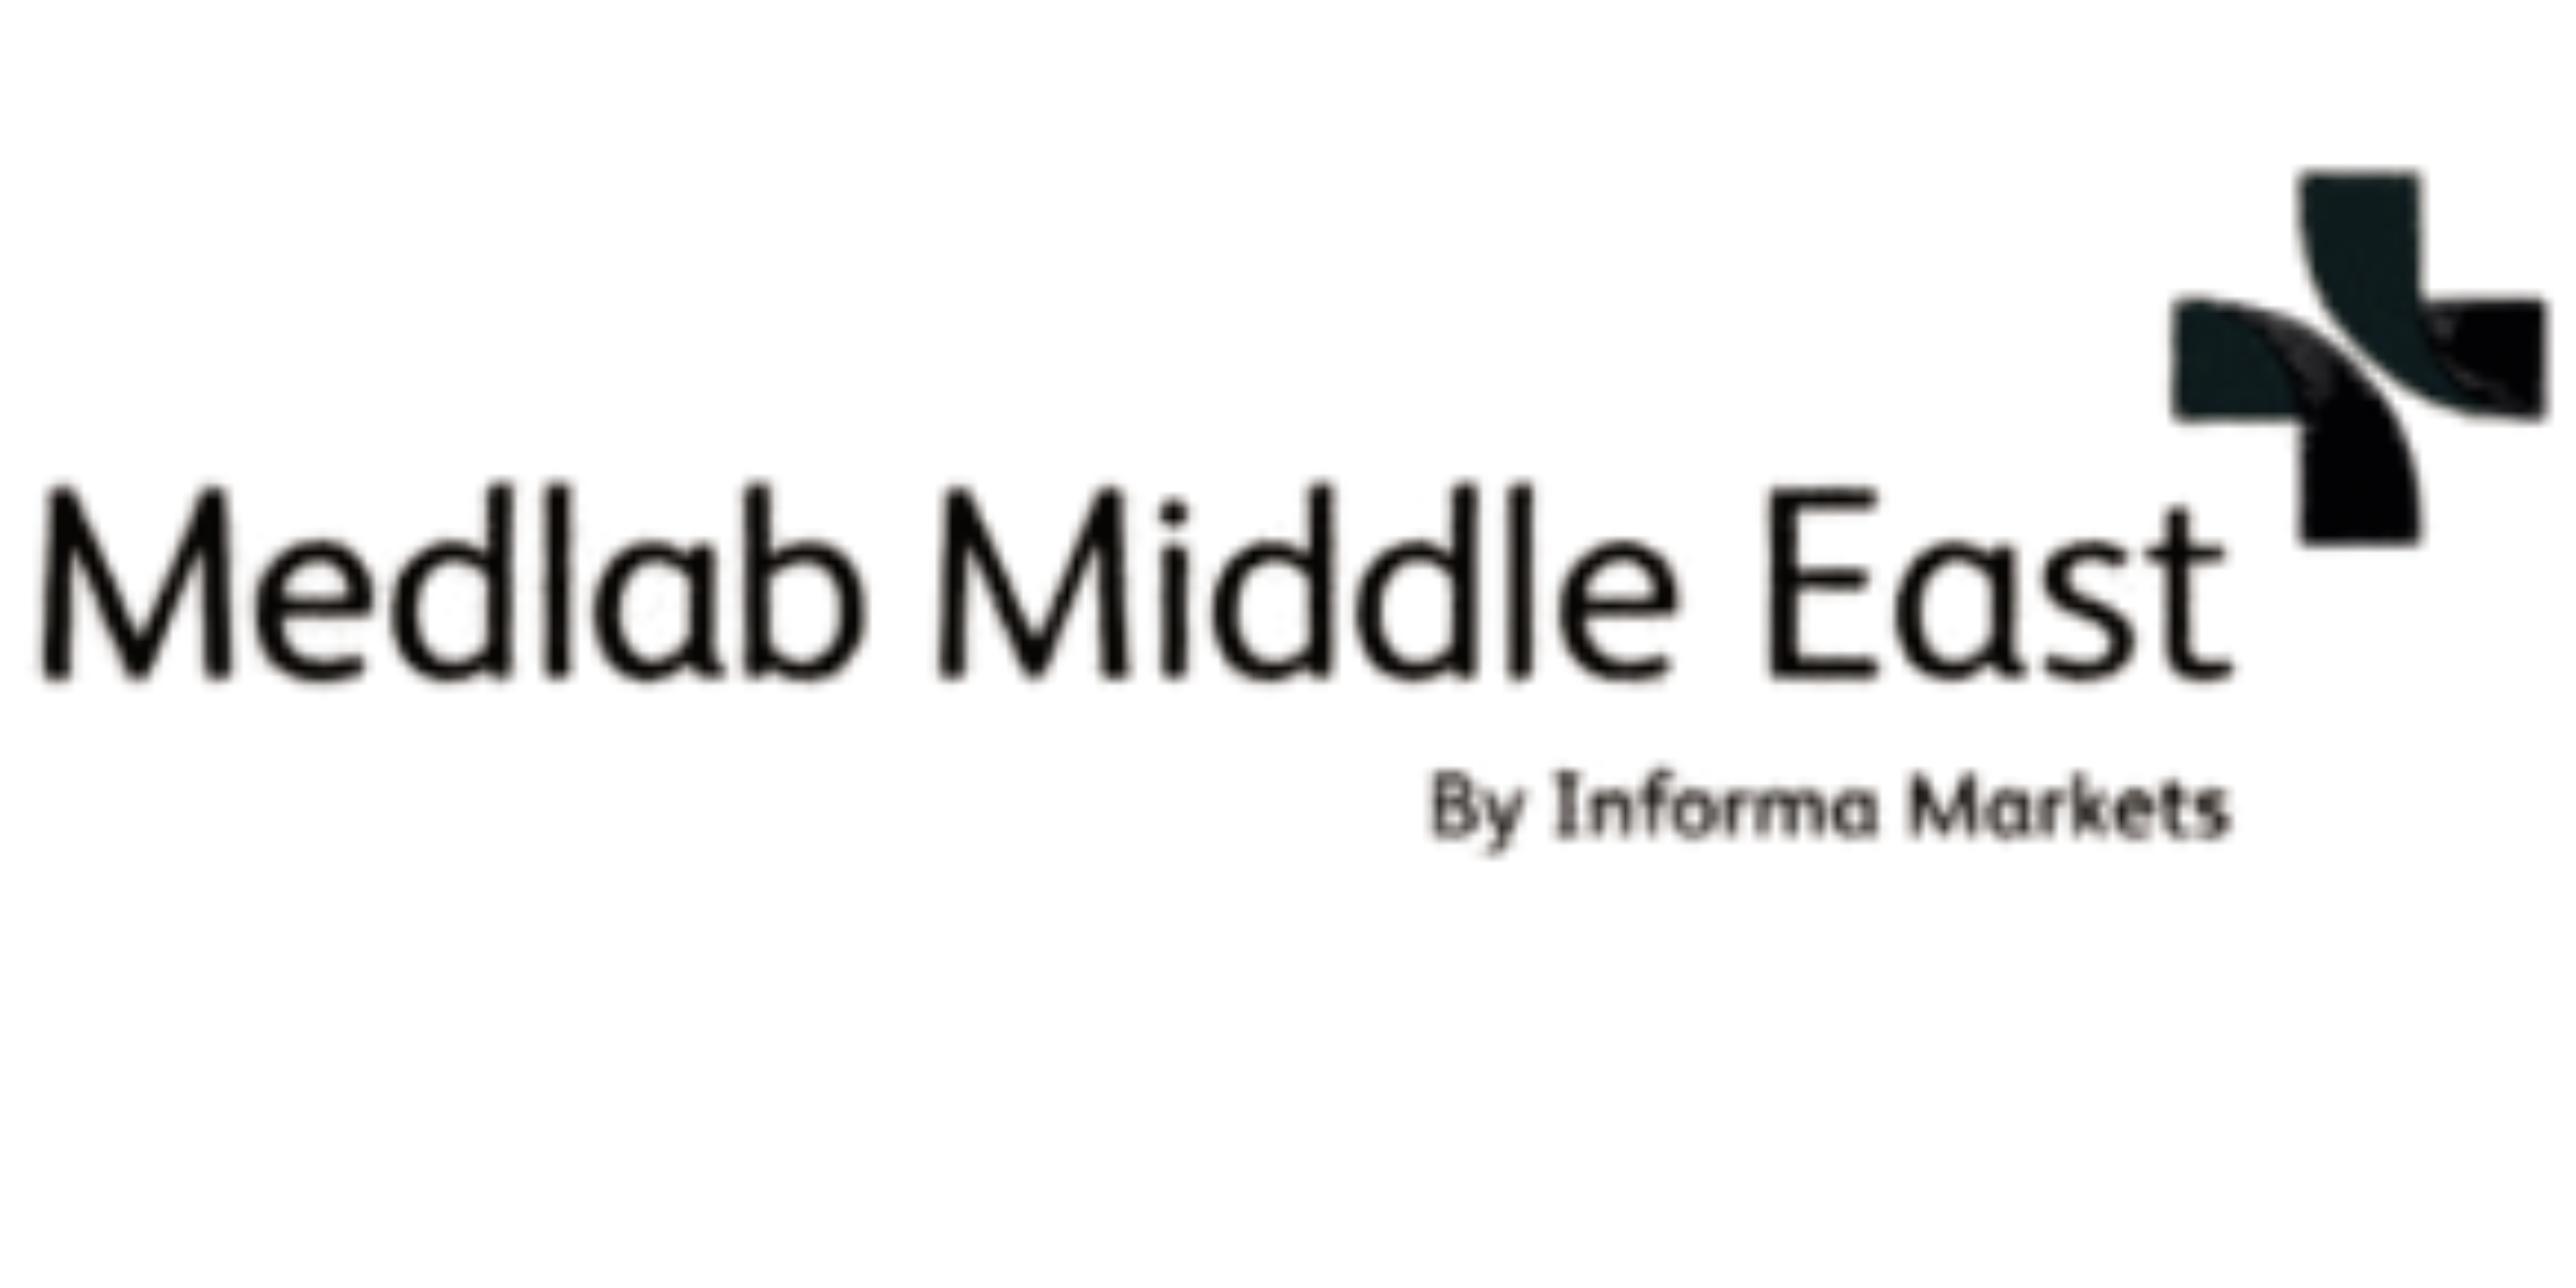 Medlab Logo